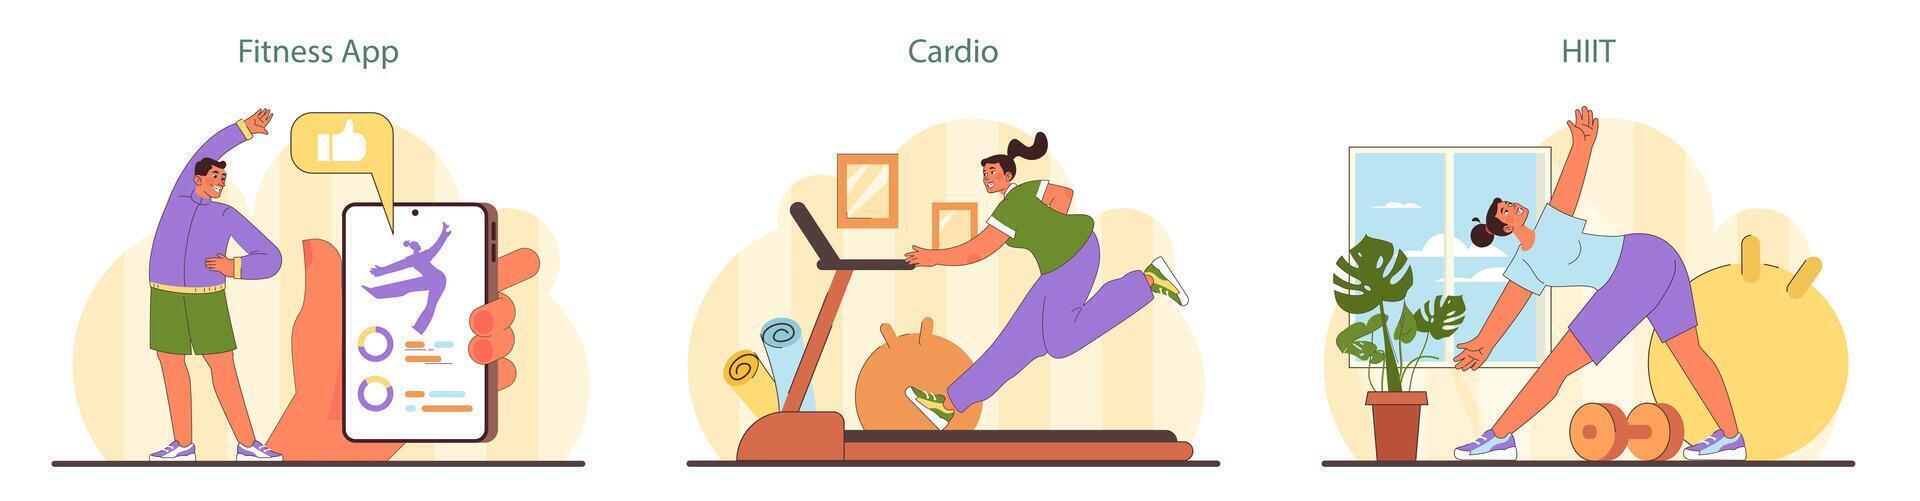 Zuhause trainieren Satz. Fitness Enthusiasten engagieren mit ein Fitness Anwendung, teilnehmen im Cardio Routinen. vektor